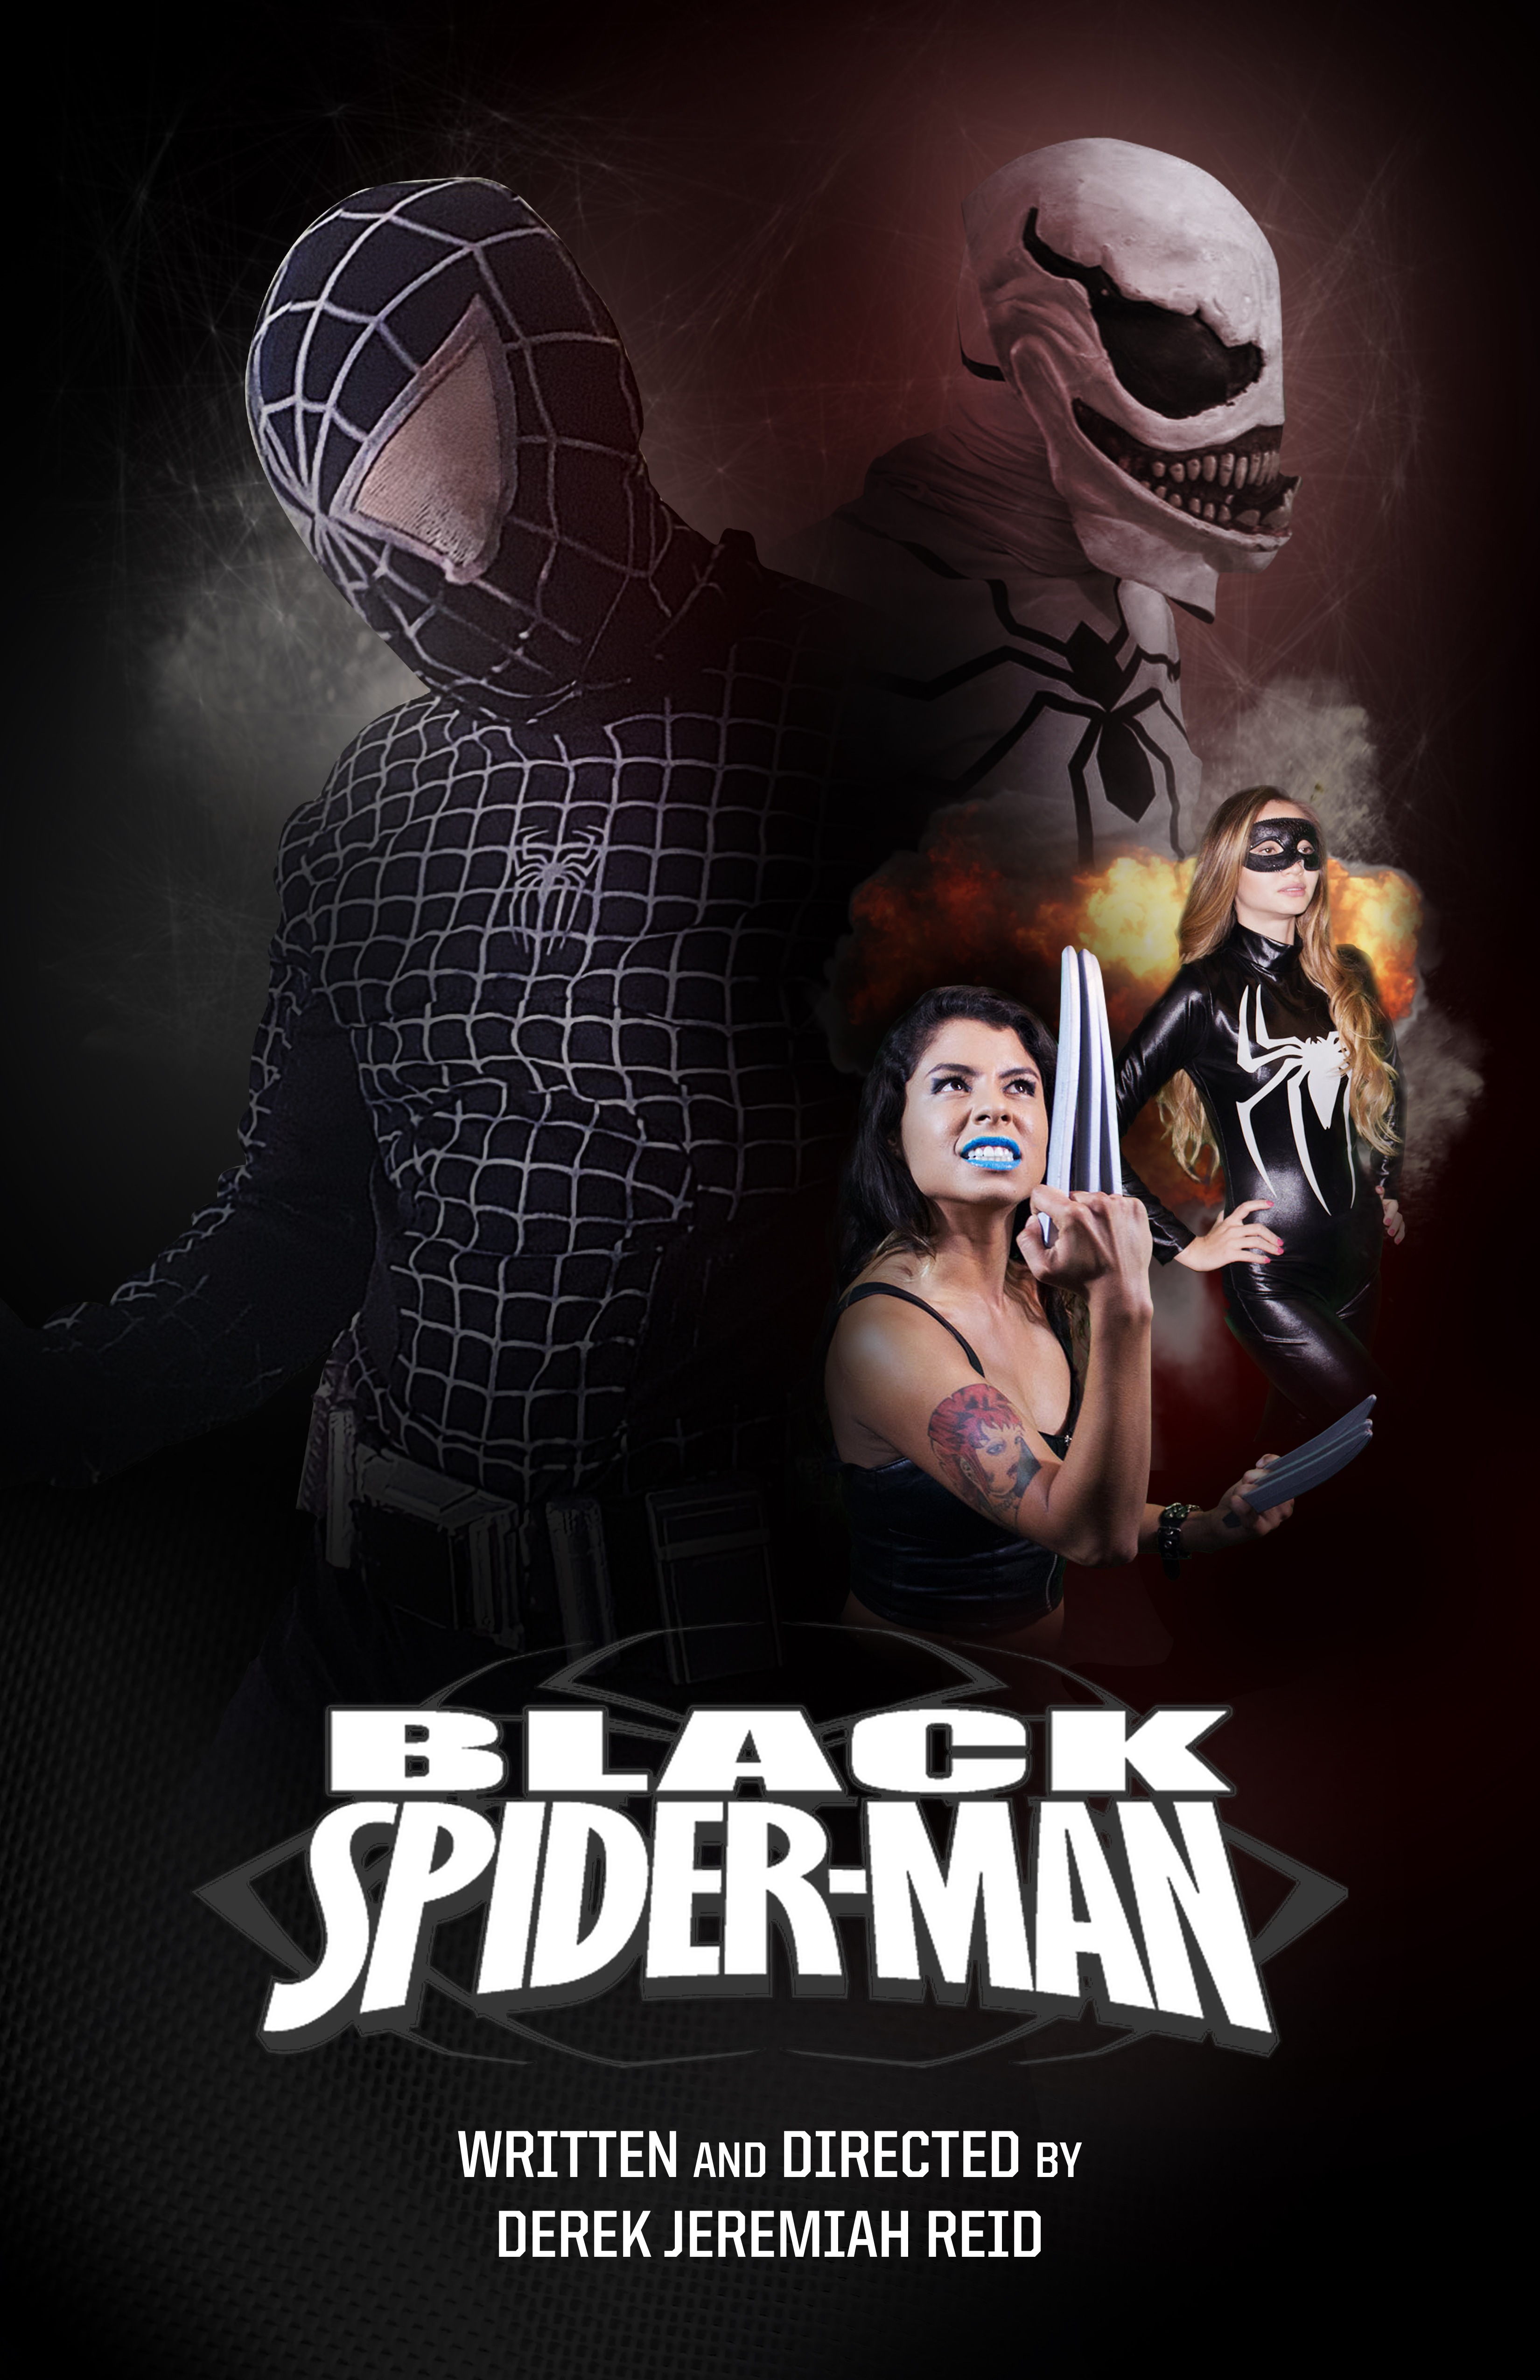 Black Spider-Man